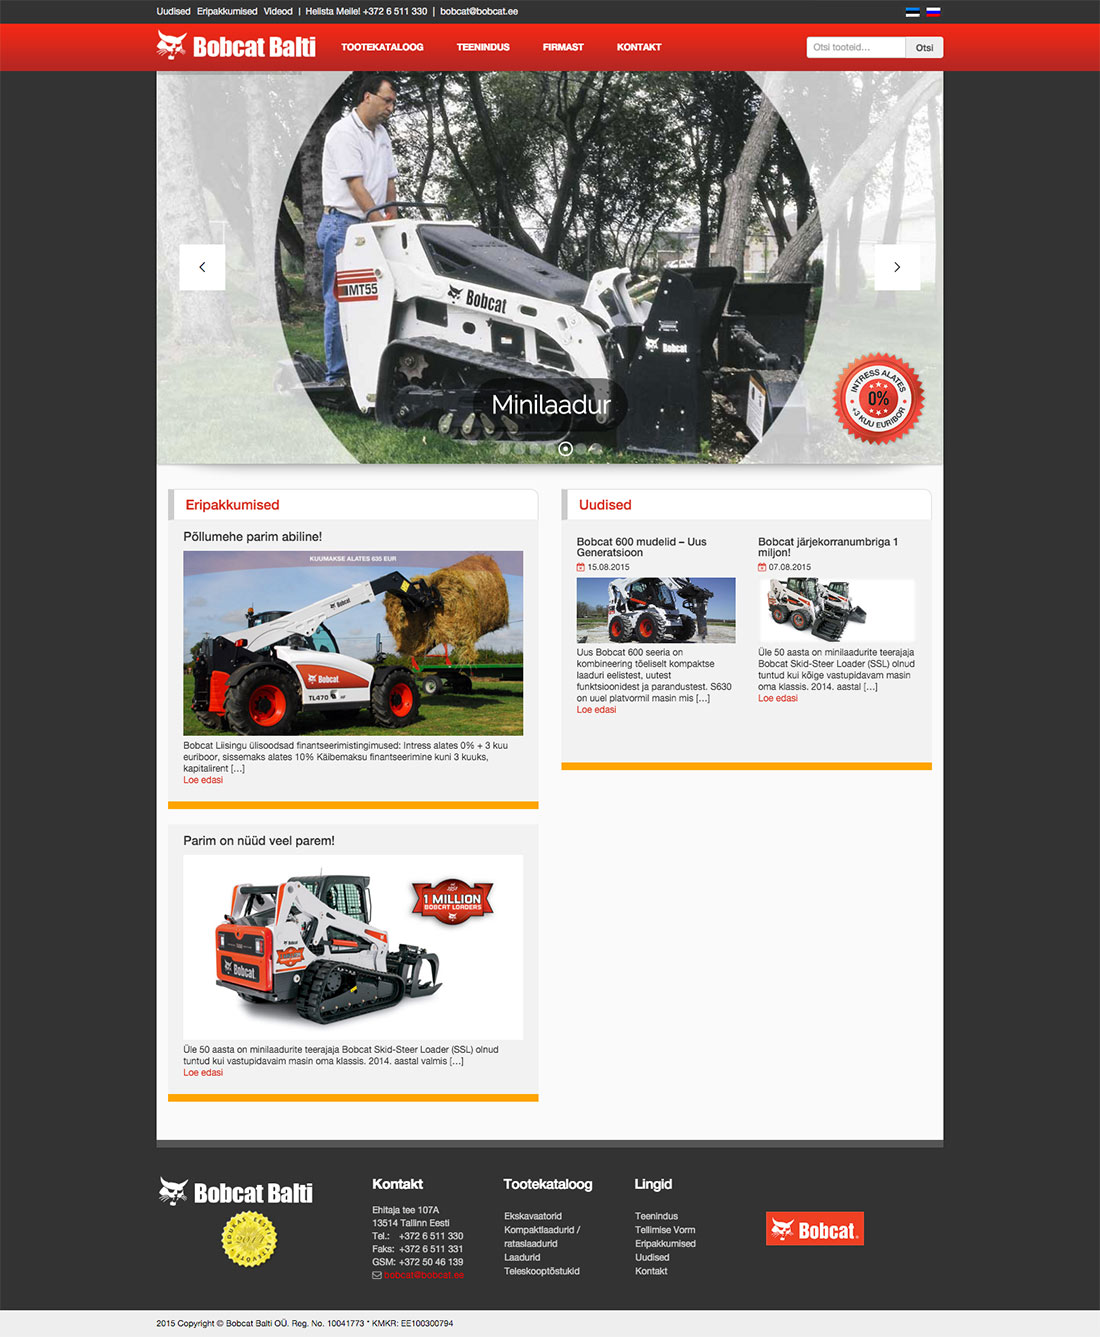 Bobcat Balti veebisaidi sisemine leht, mille on kujundanud iWeb, koos teenuste ja toodete detailidega